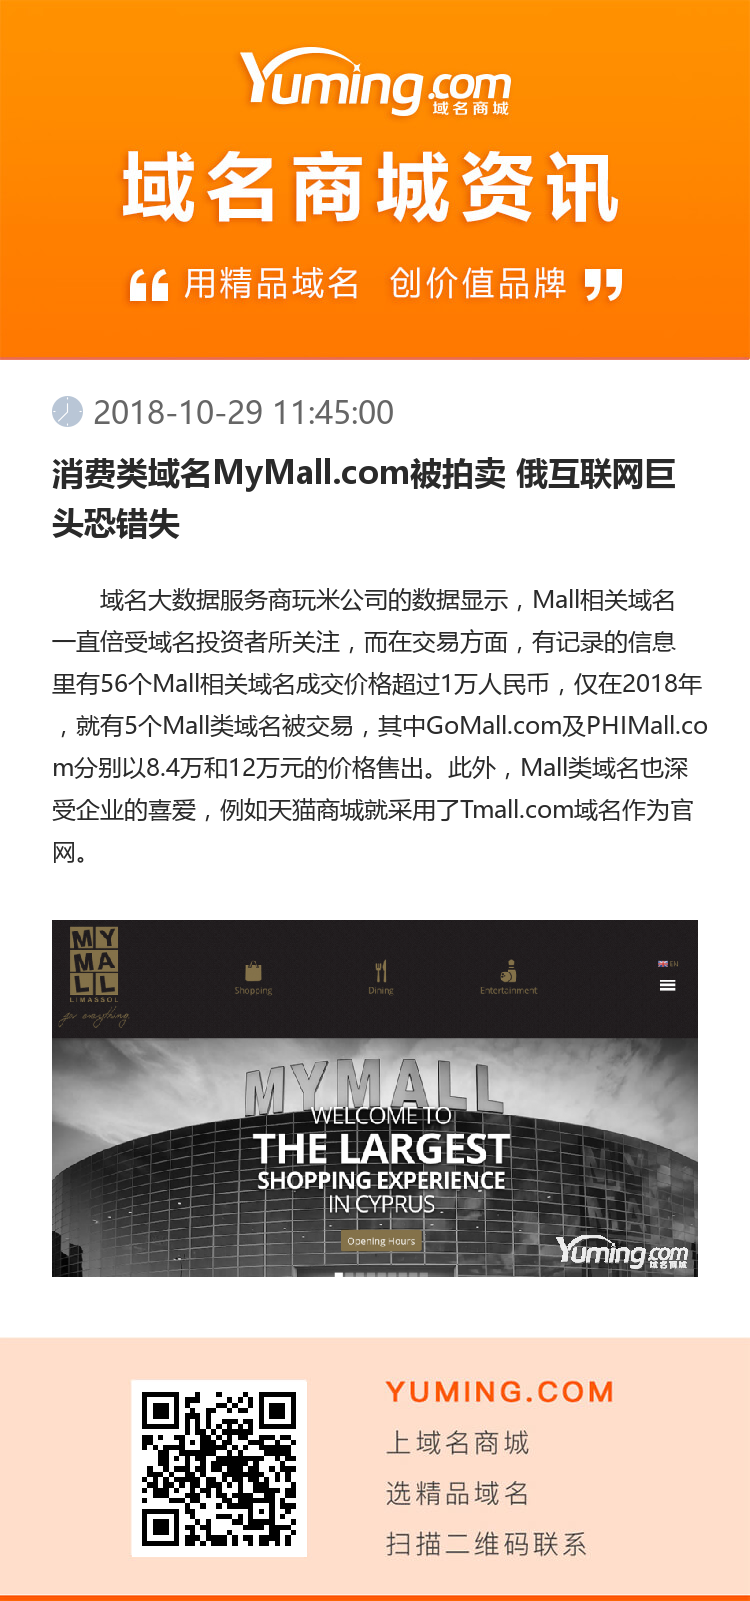 消费类域名MyMall.com被拍卖 俄互联网巨头恐错失